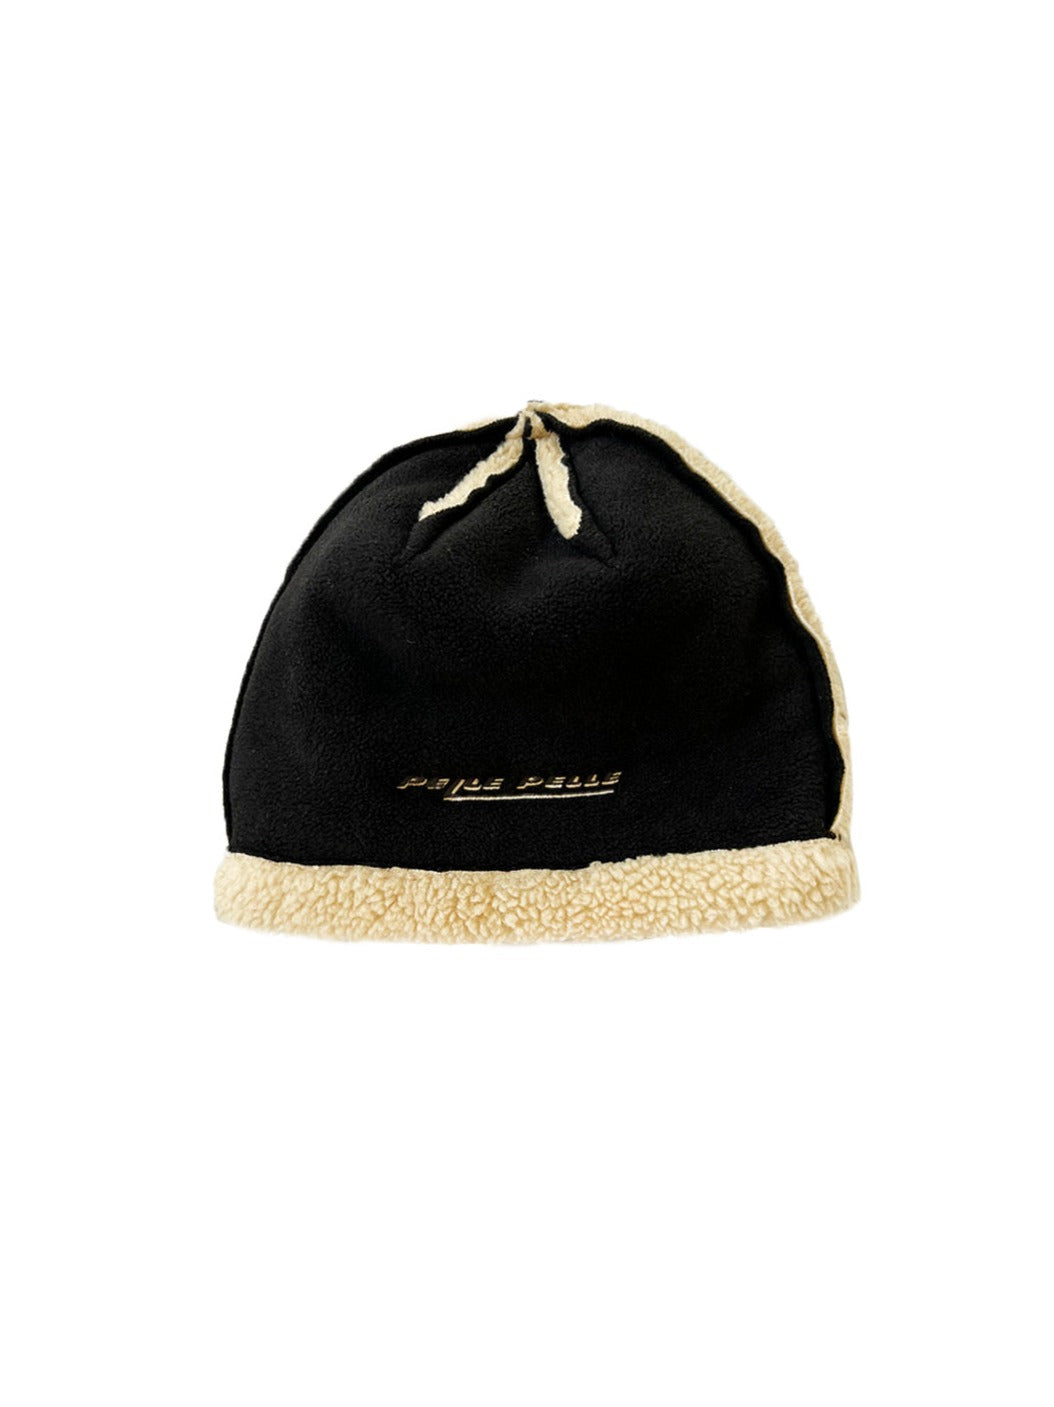 Pelle Pelle Black Fleece Shearling Hat